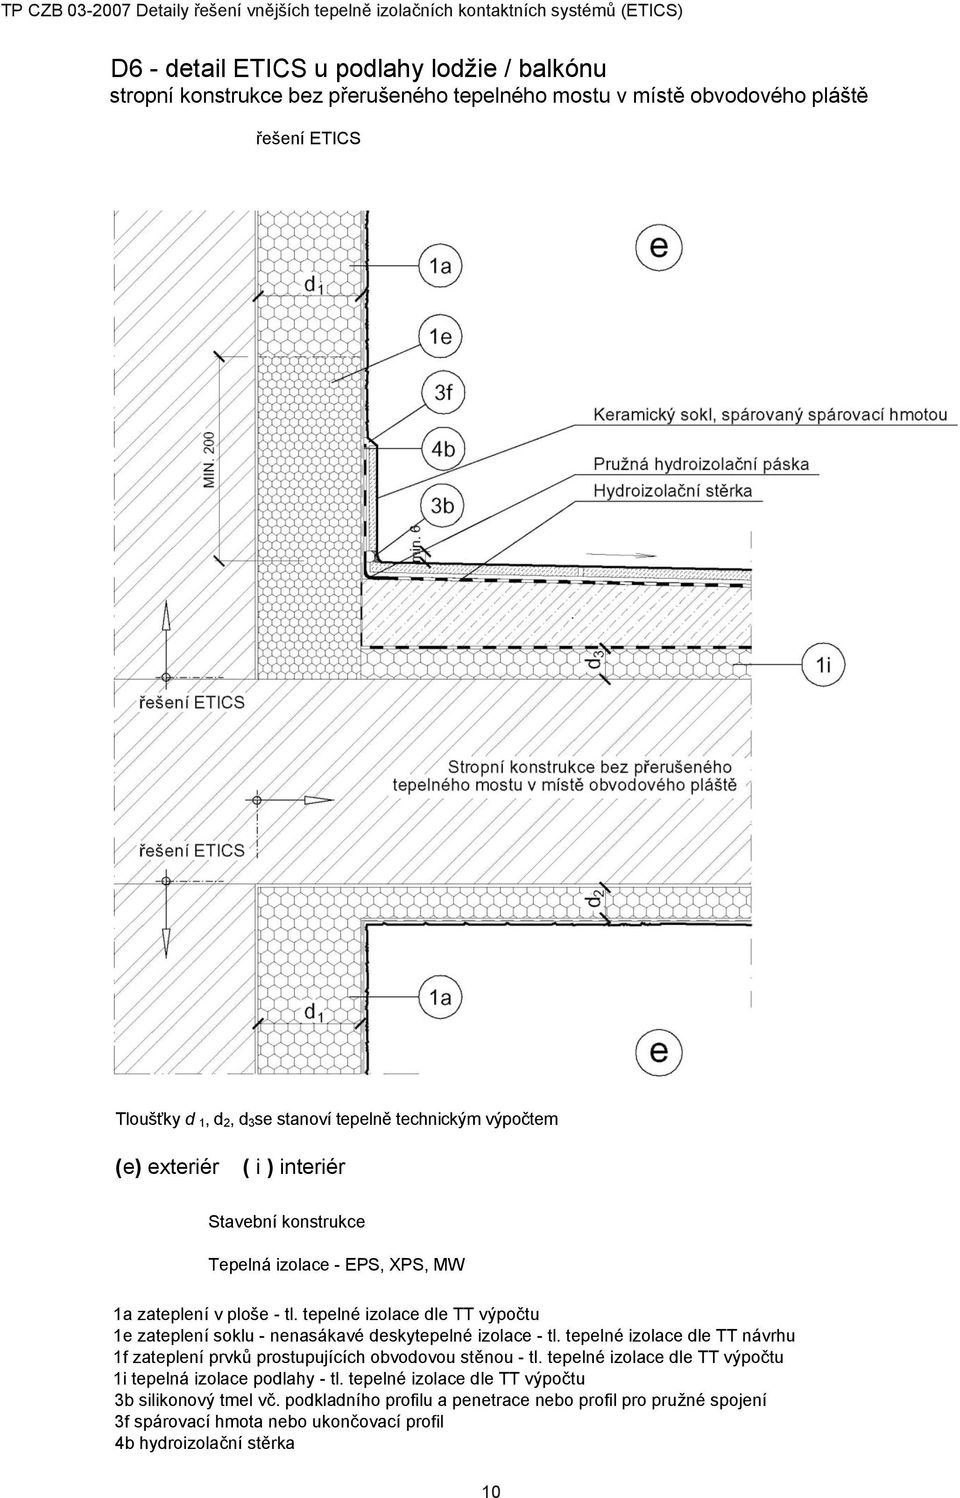 tepelné izolace dle TT návrhu 1f zateplení prvků prostupujících obvodovou stěnou - tl. tepelné izolace dle TT výpočtu 1i tepelná izolace podlahy - tl.